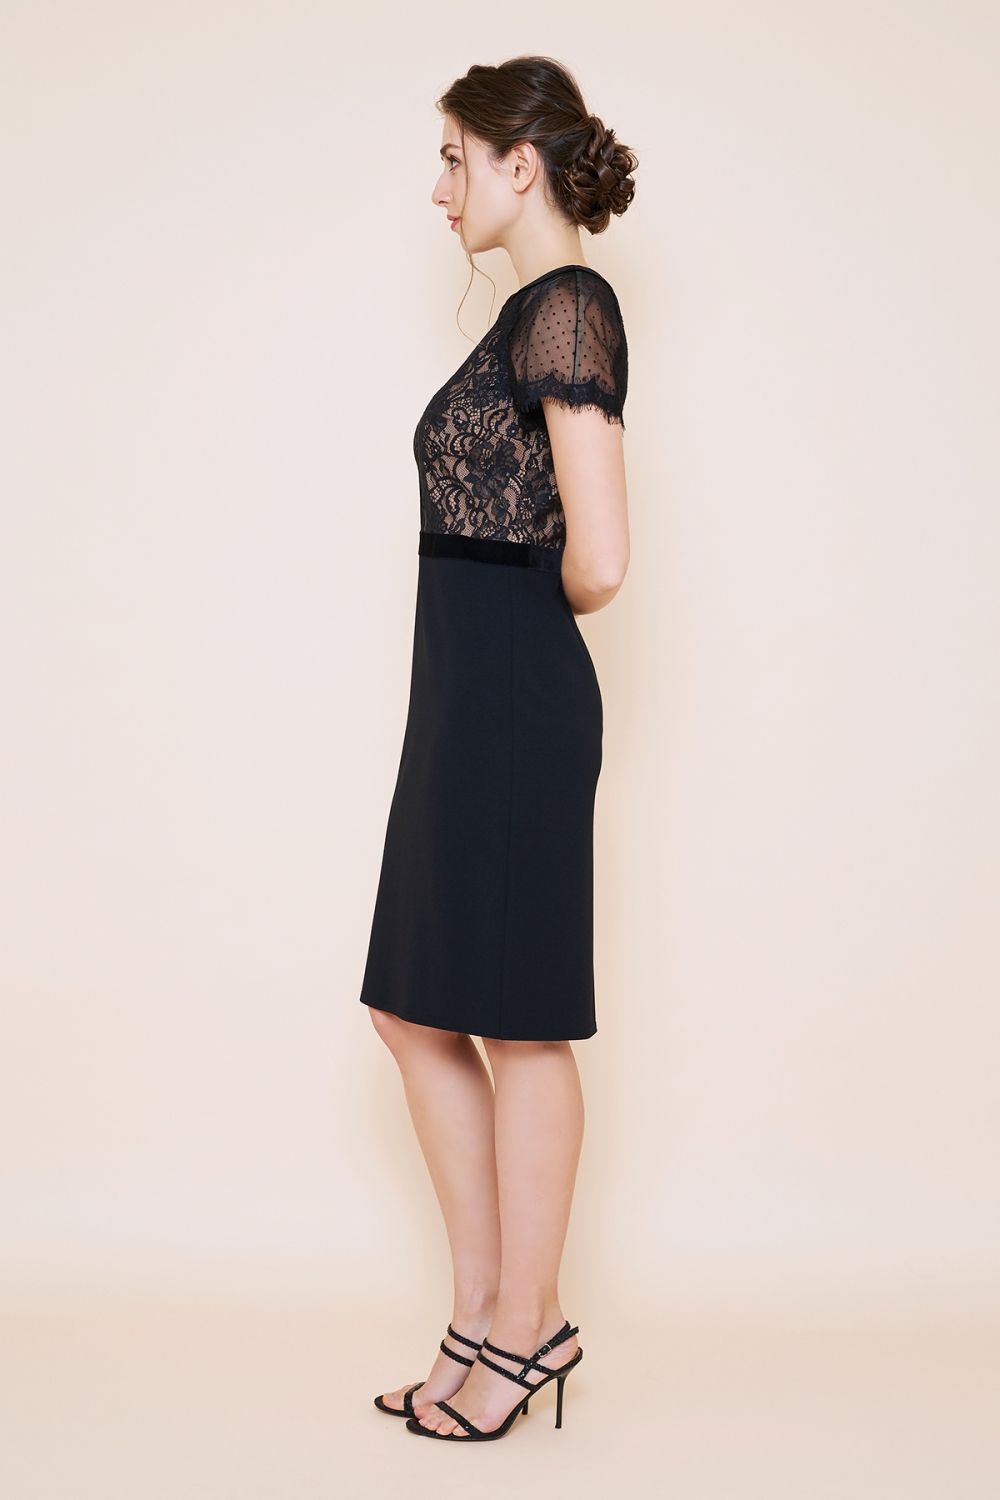 ブラック 半袖ドットチュール タイトミディアムドレス